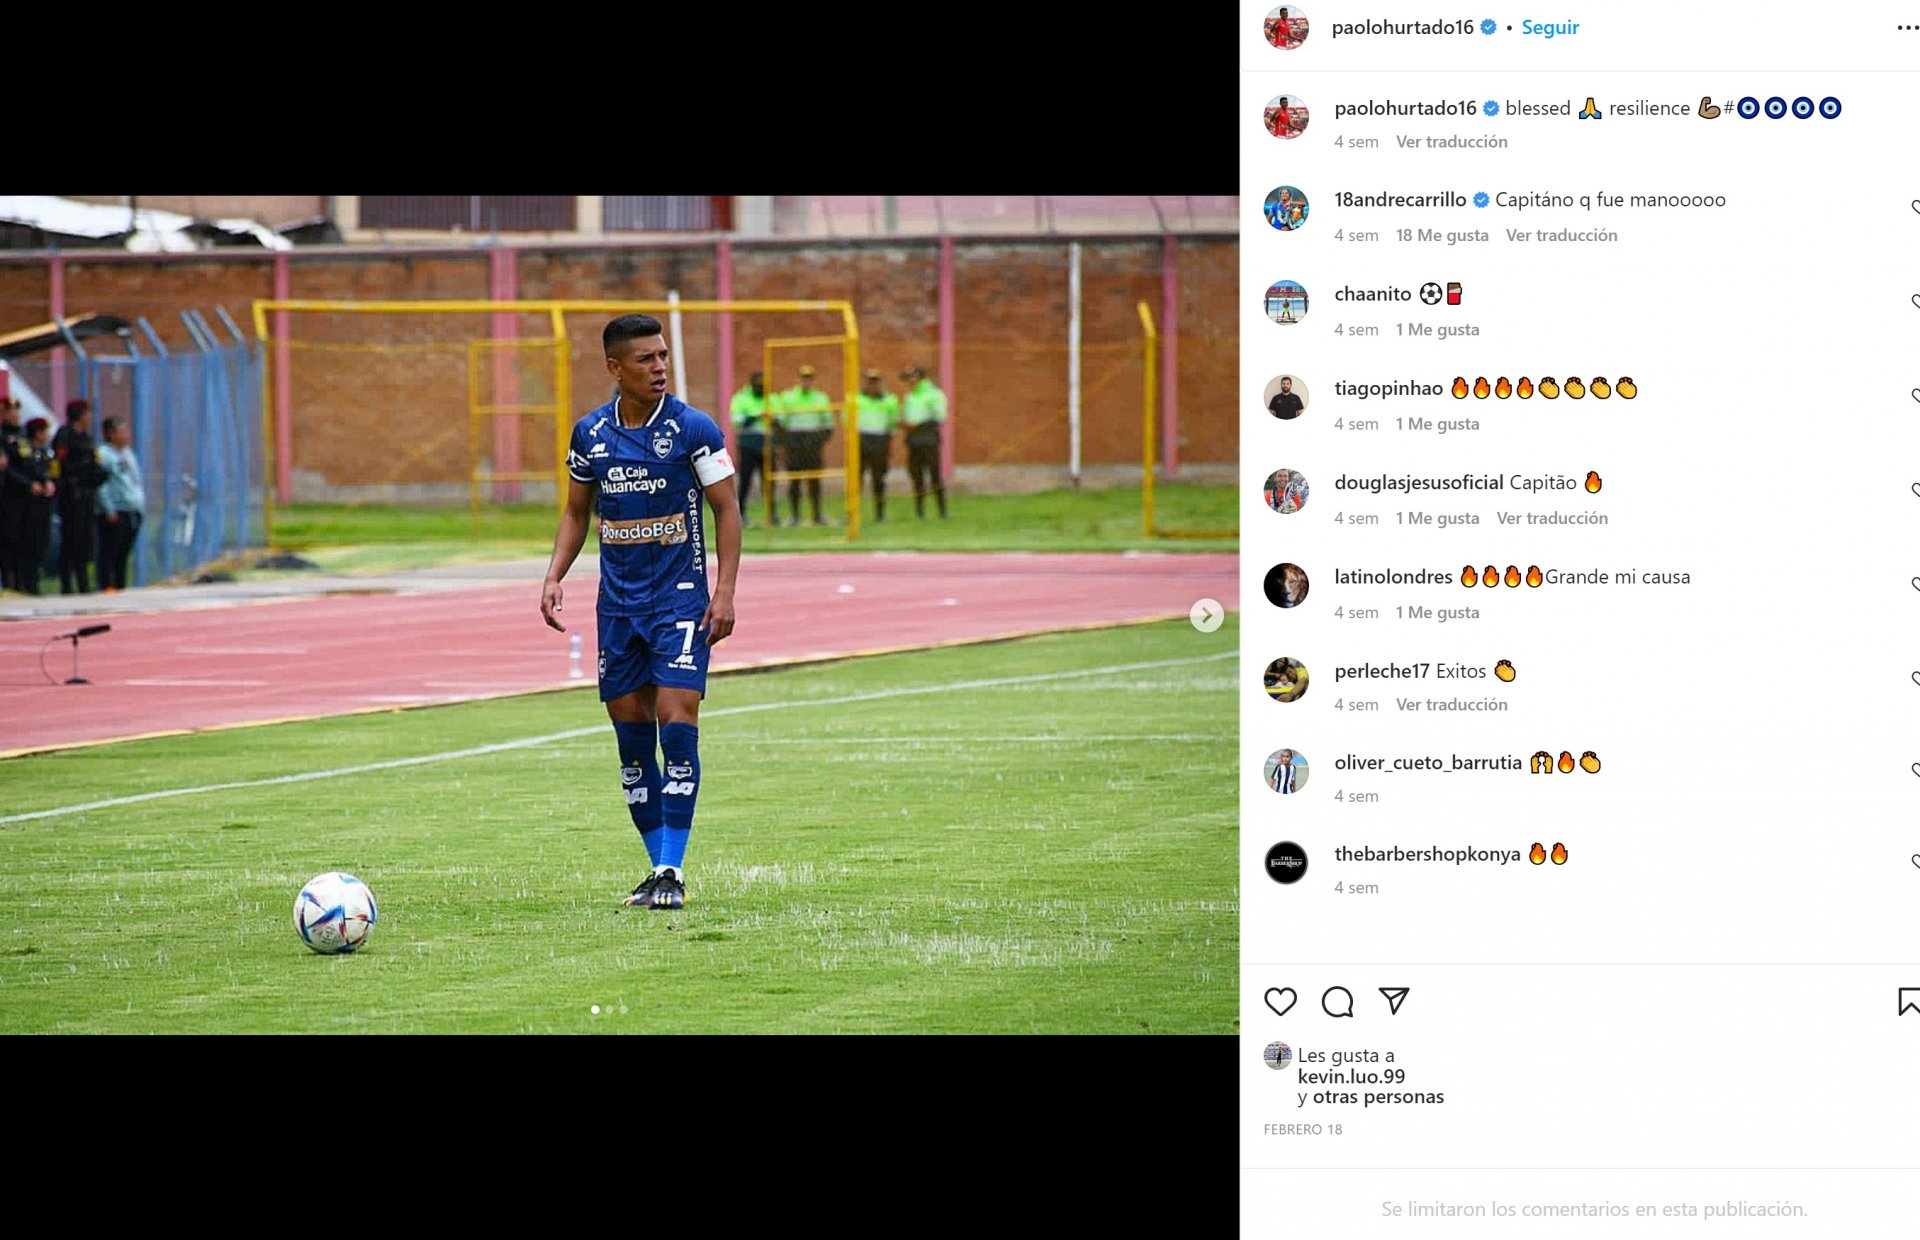 Paolo Hurtado limita los comentarios en Instagram